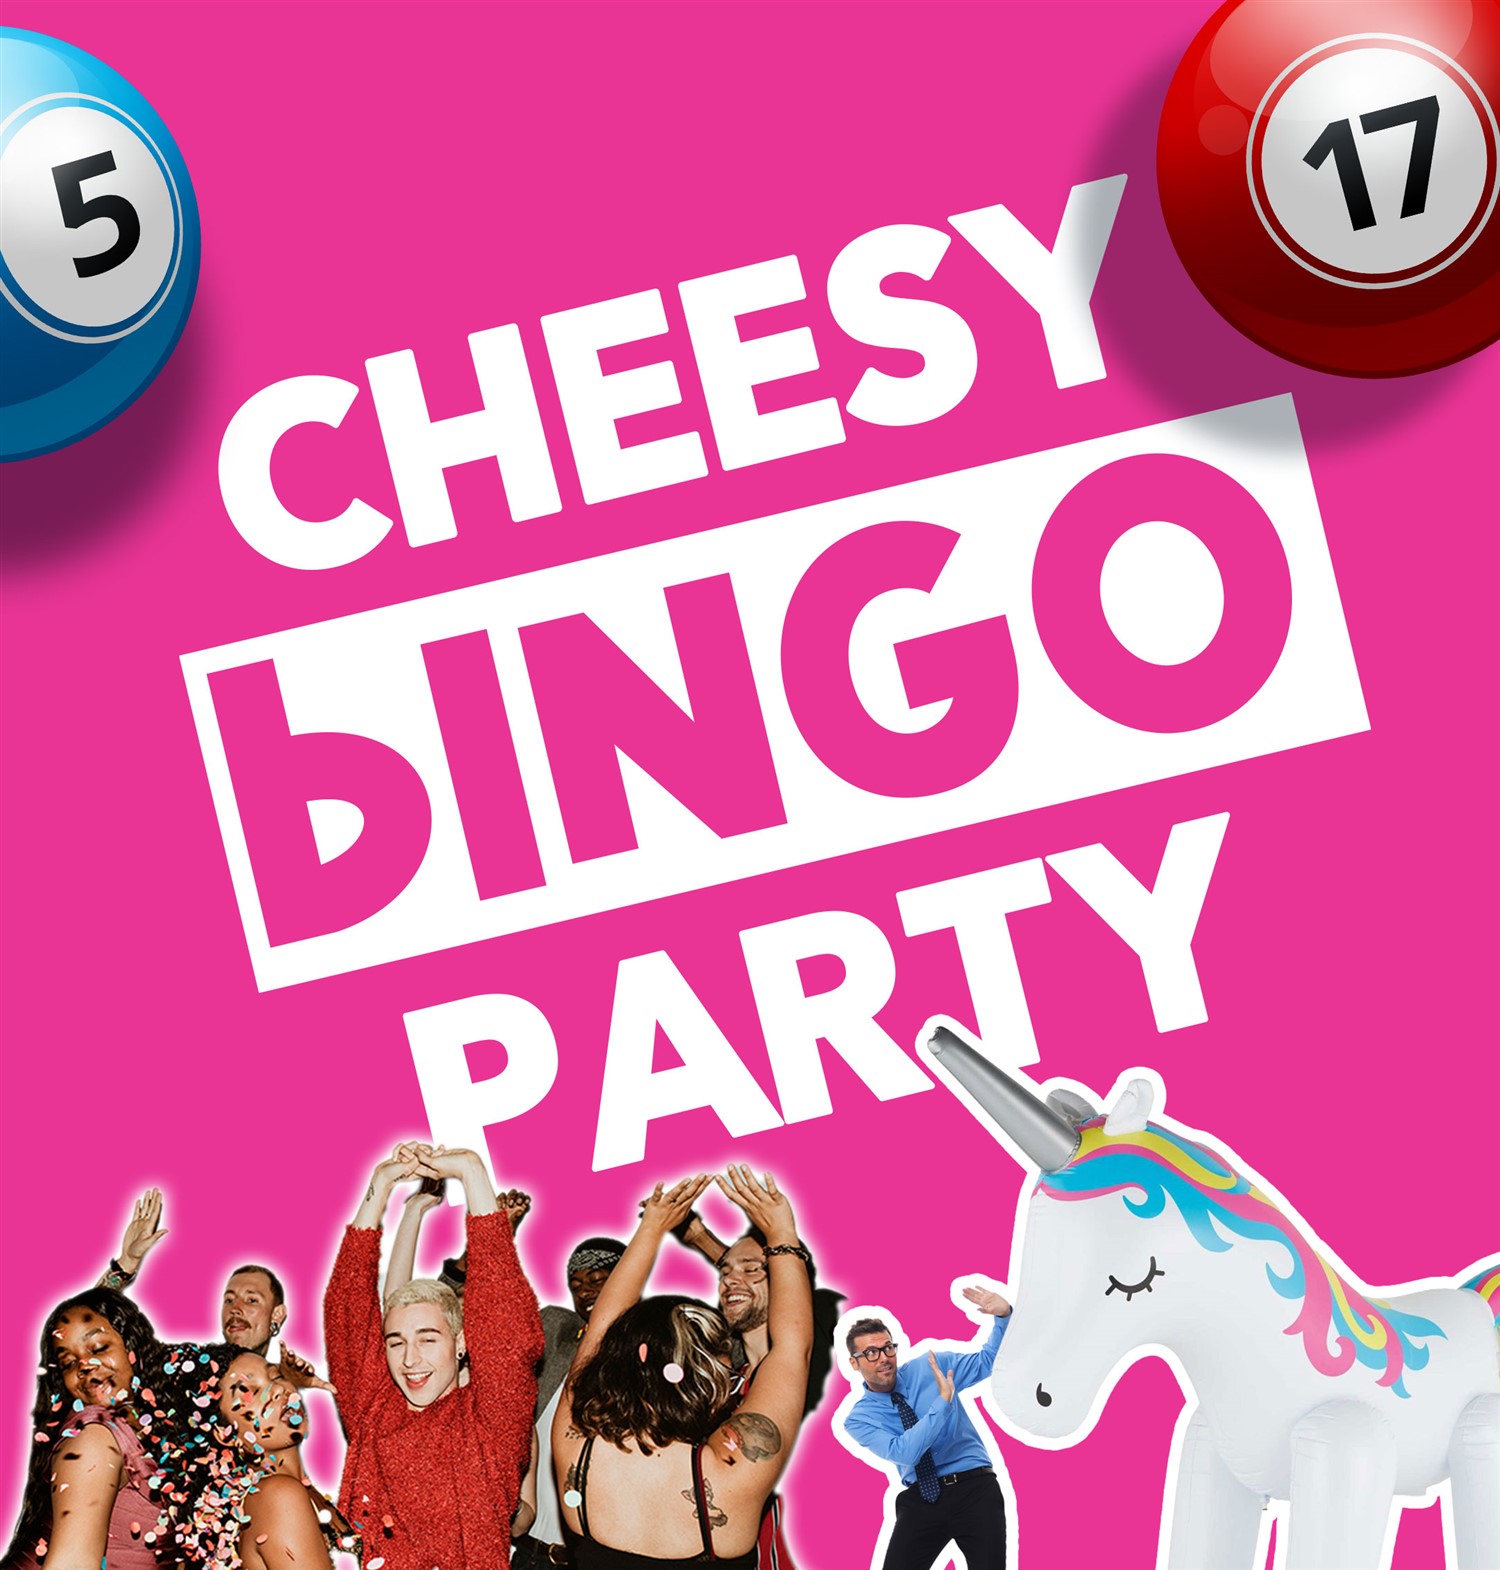 Cheesy Bingo Party Cheesy Bingo on jul. 12, 19:30@Sutton Coldfield Town Hall - Compra entradas y obtén información enSutton Coldfield Town Hall 